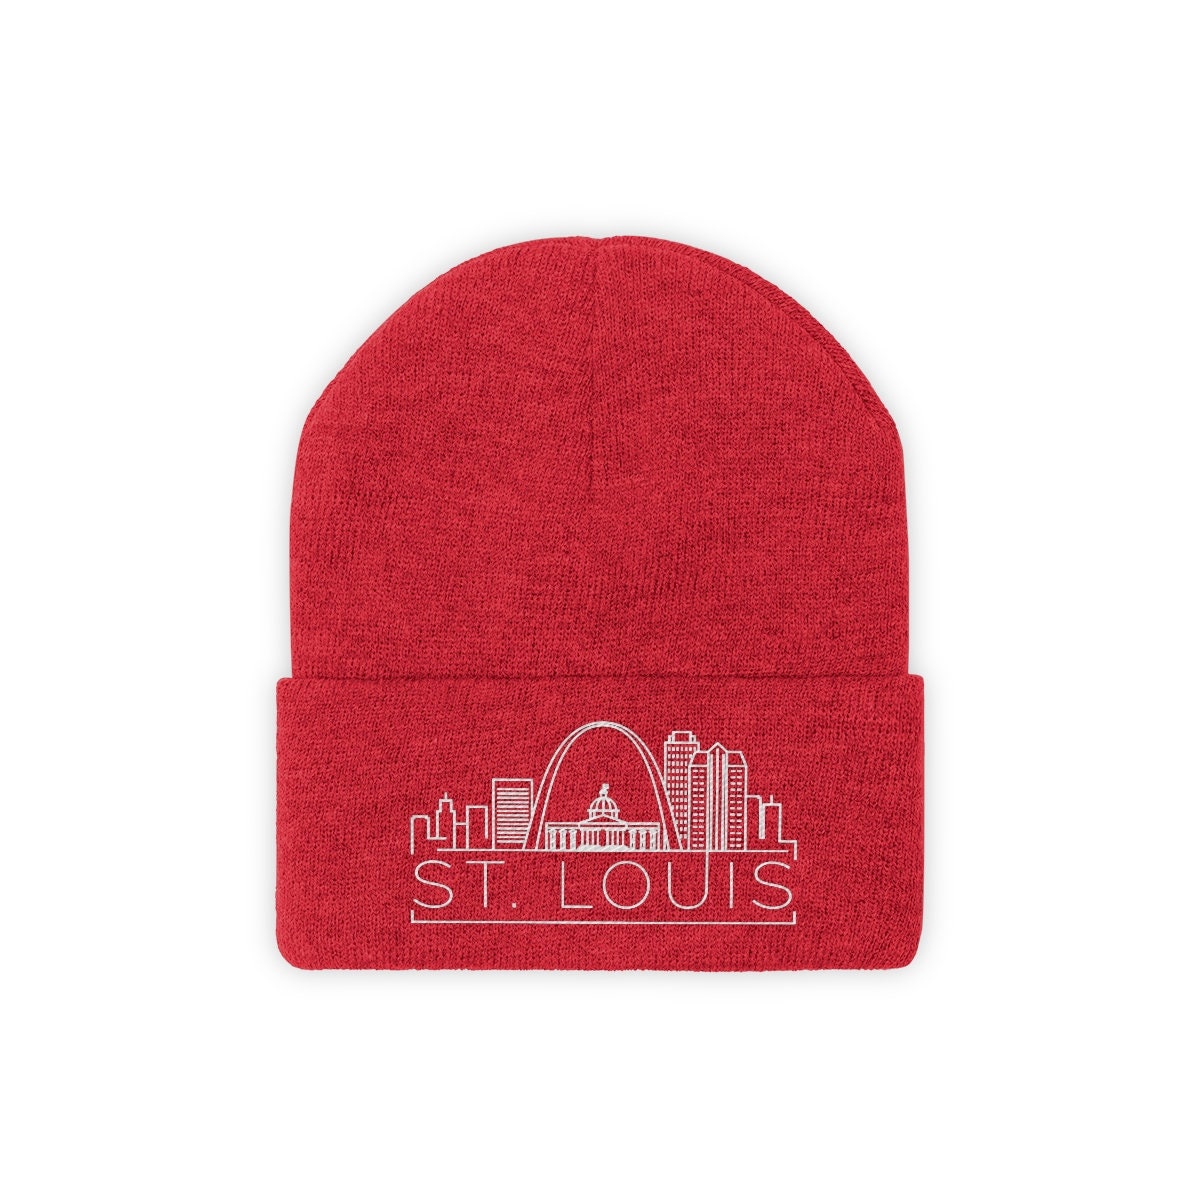 St. Louis Royal Knit Beanie Hat